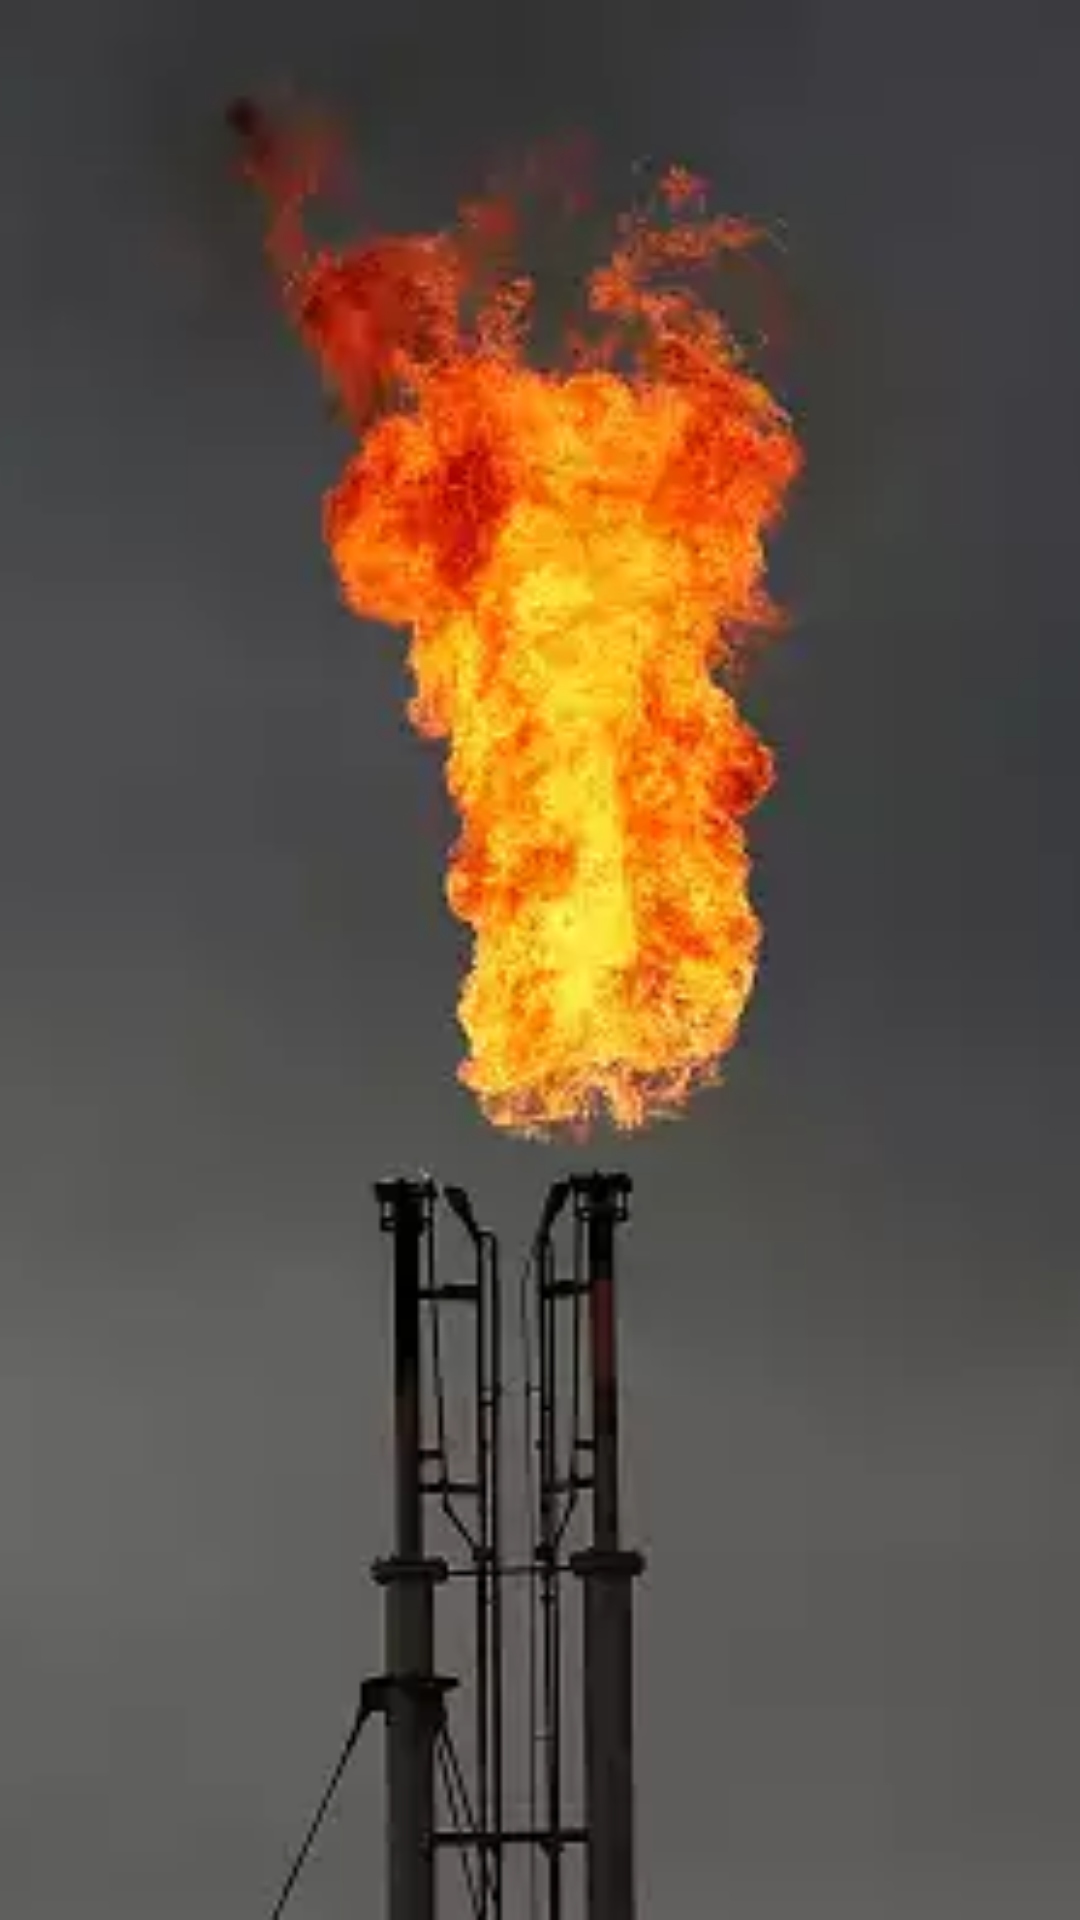 दुनिया में किन देशों के पास हैं सबसे ज्यादा प्राकृतिक गैस के भंडार, यहां देखें लिस्ट 